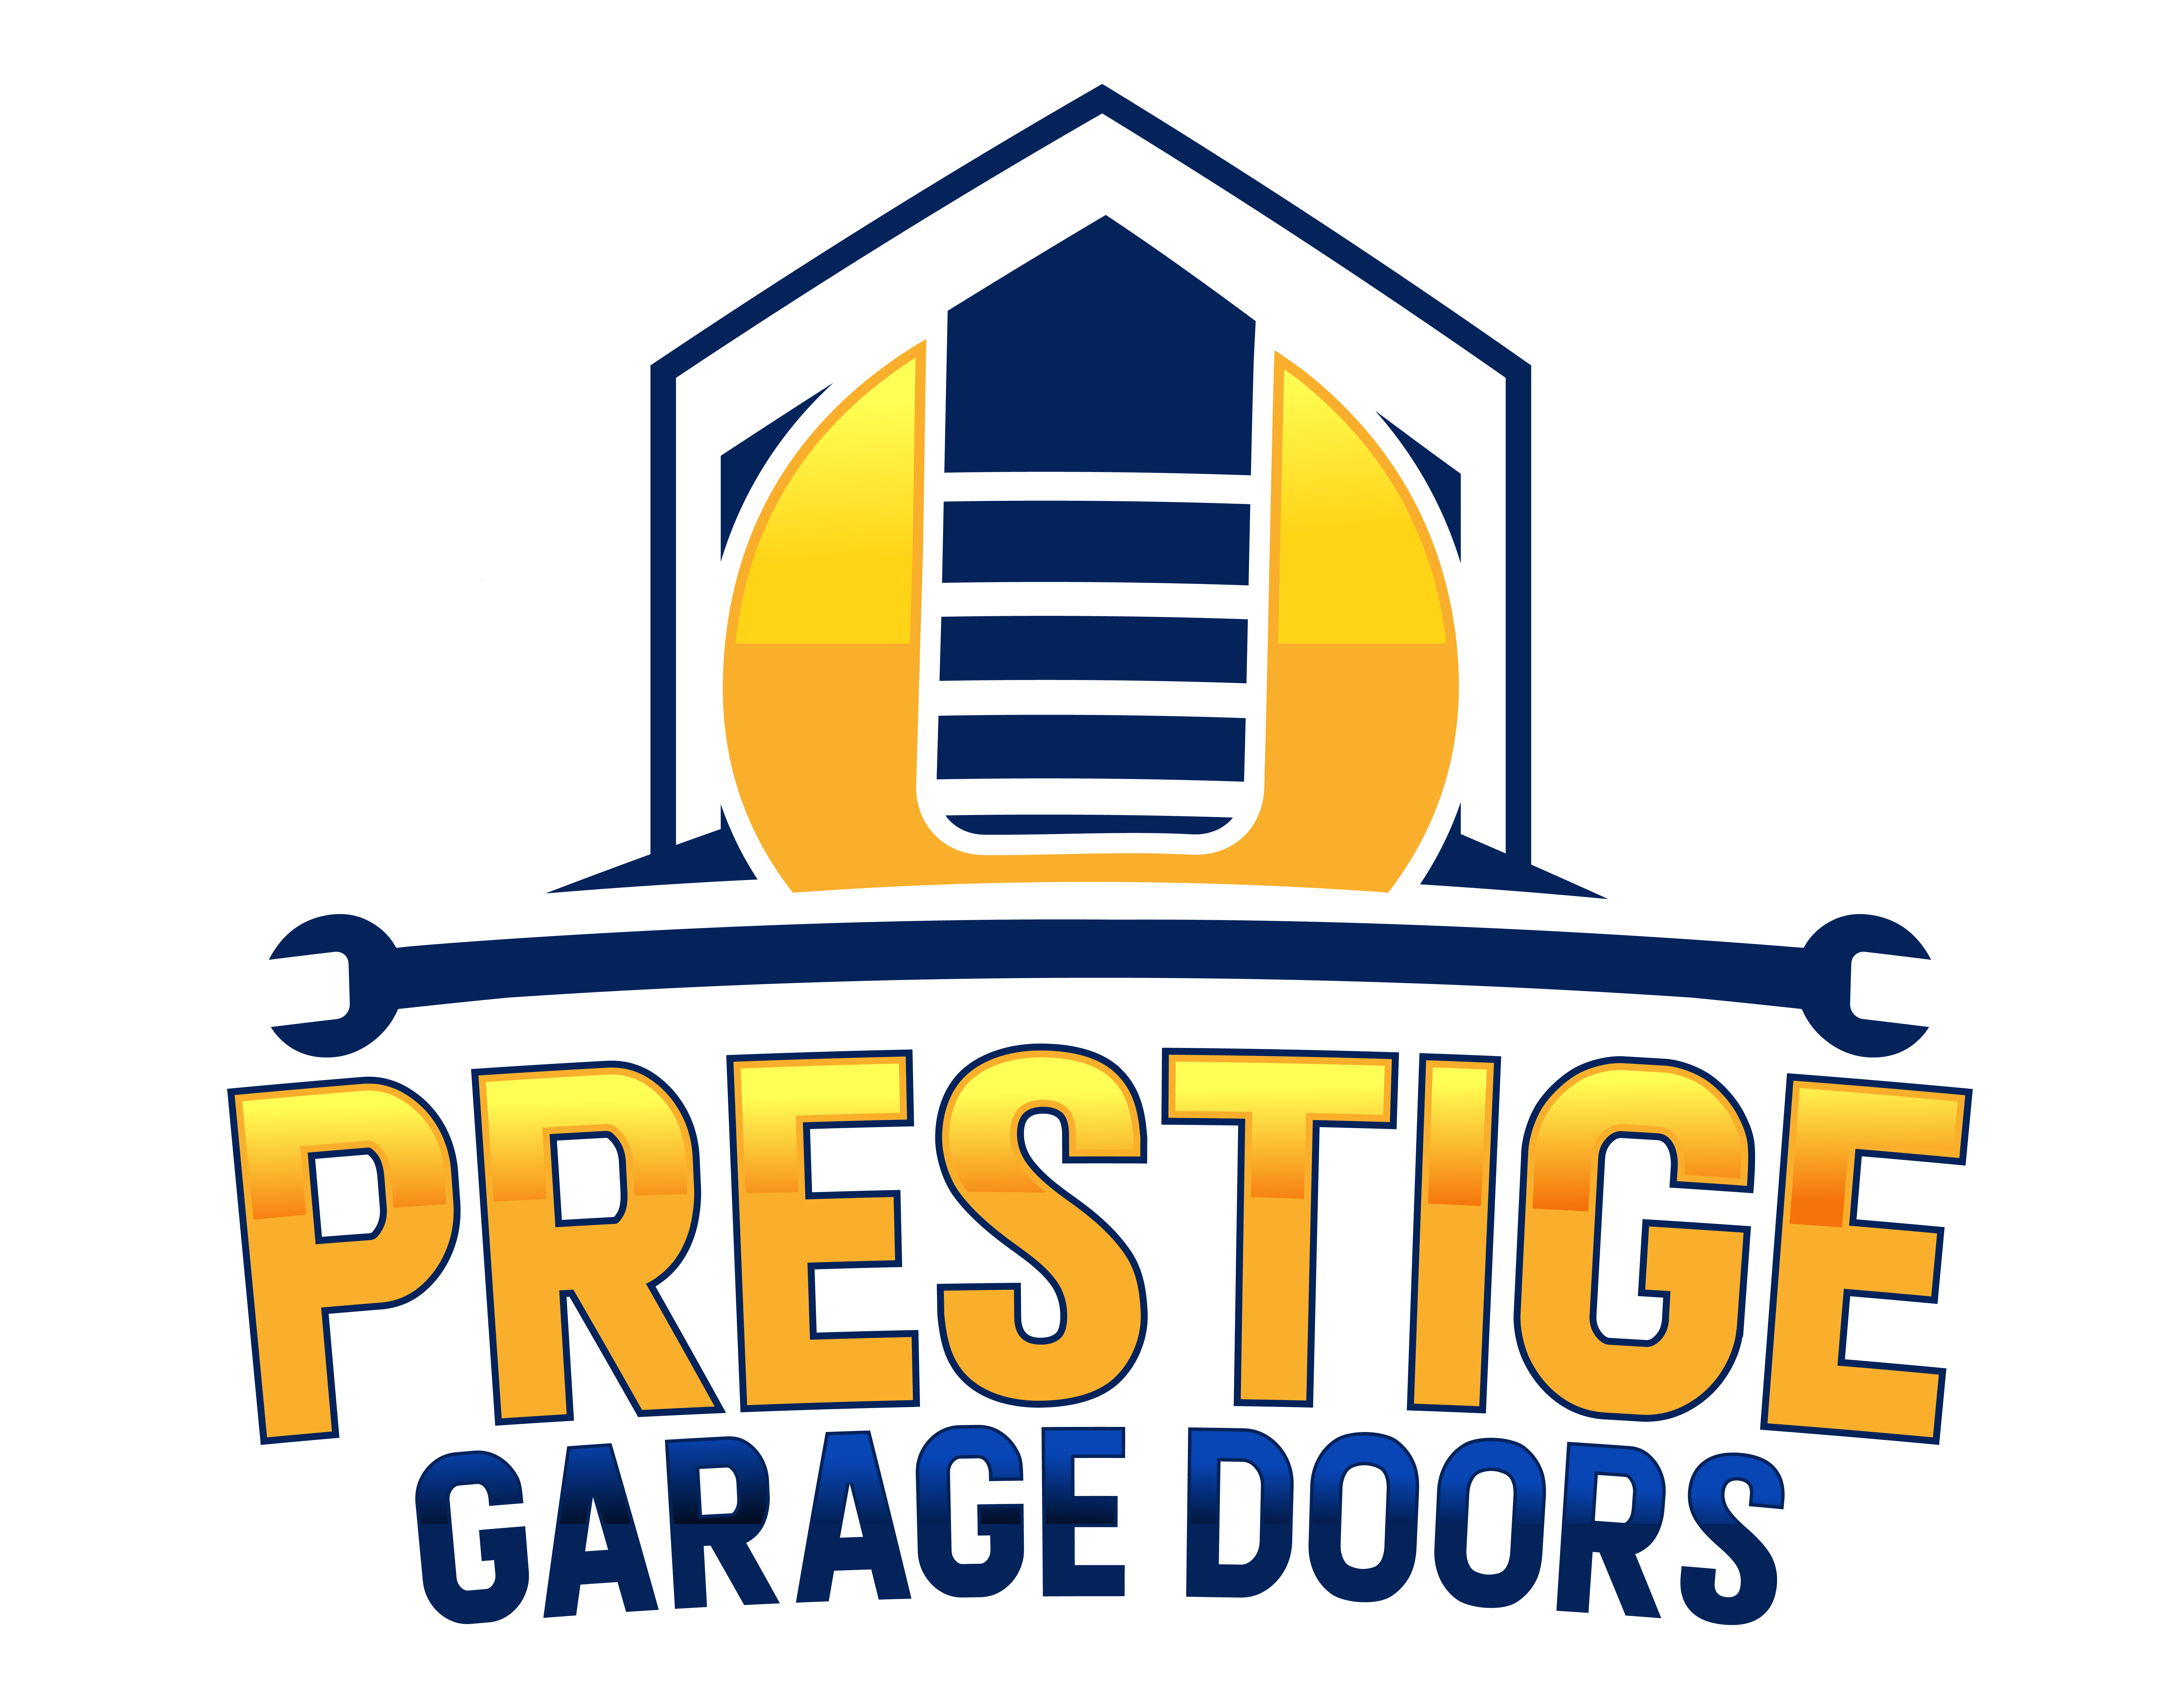 Prestige Garage Doors's logo